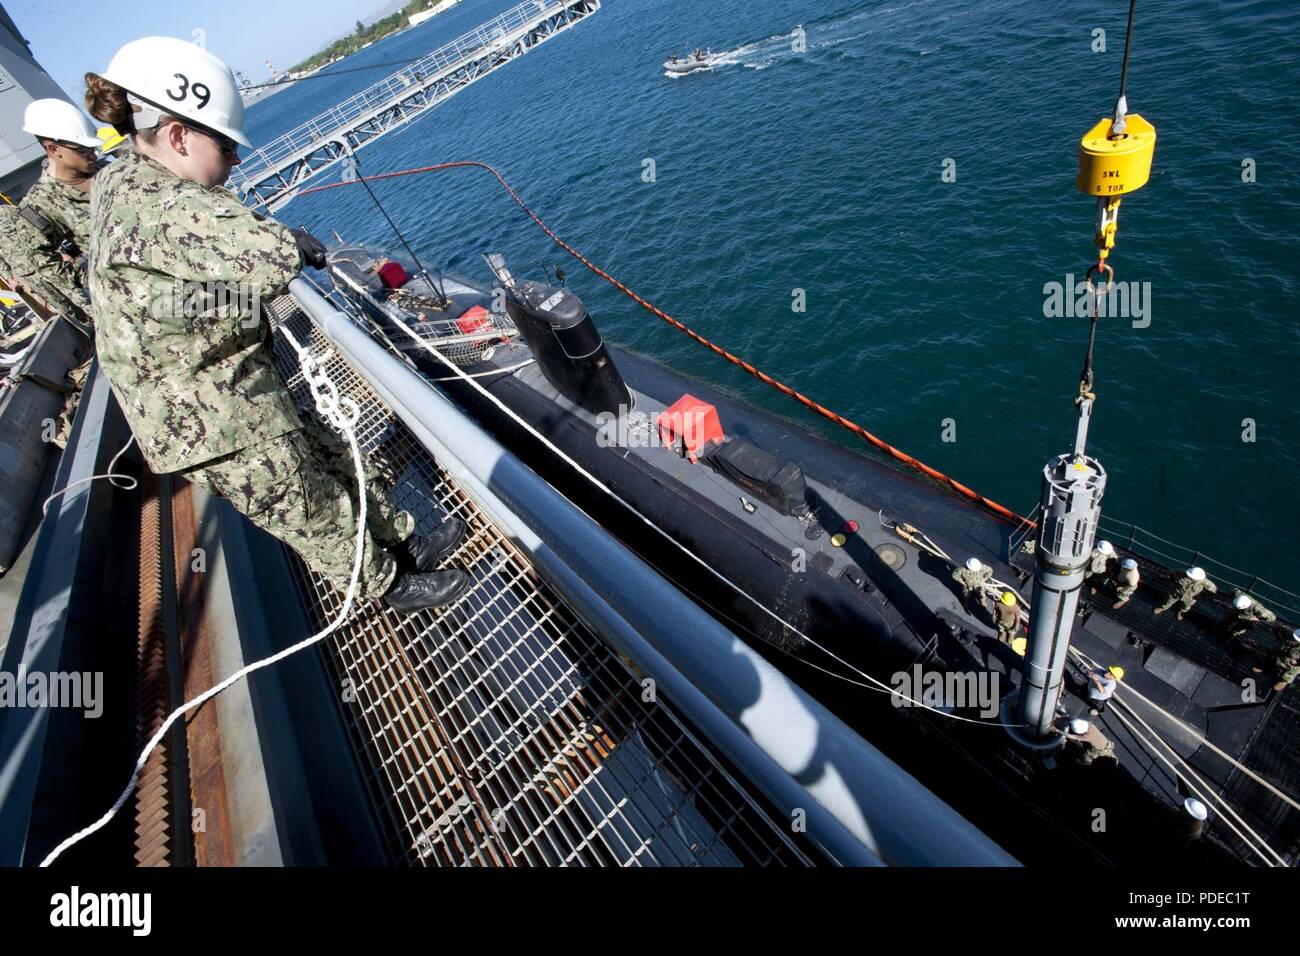 PEARL HARBOR, Hawaii (20 mai 2018) -- la classe Los Angeles sous-marin d'attaque rapide USS Santa Fe (SSN 763) reçoit une torpille du sous-marin USS Emory S. Land d'offres (comme 39) pendant une opération de démonstration AJAX, le 20 mai. L'Emory S. Land est en ce moment sur un service escale à Pearl Harbor, Hawaii. L'Emory S. Land est homeported in Apra Harbour, Guam et offre des services de maintenance, les services de l'hôtel et un soutien logistique à des sous-marins et navires de surface int il flotte des États-Unis 5e et 7e secteurs d'opération. Banque D'Images